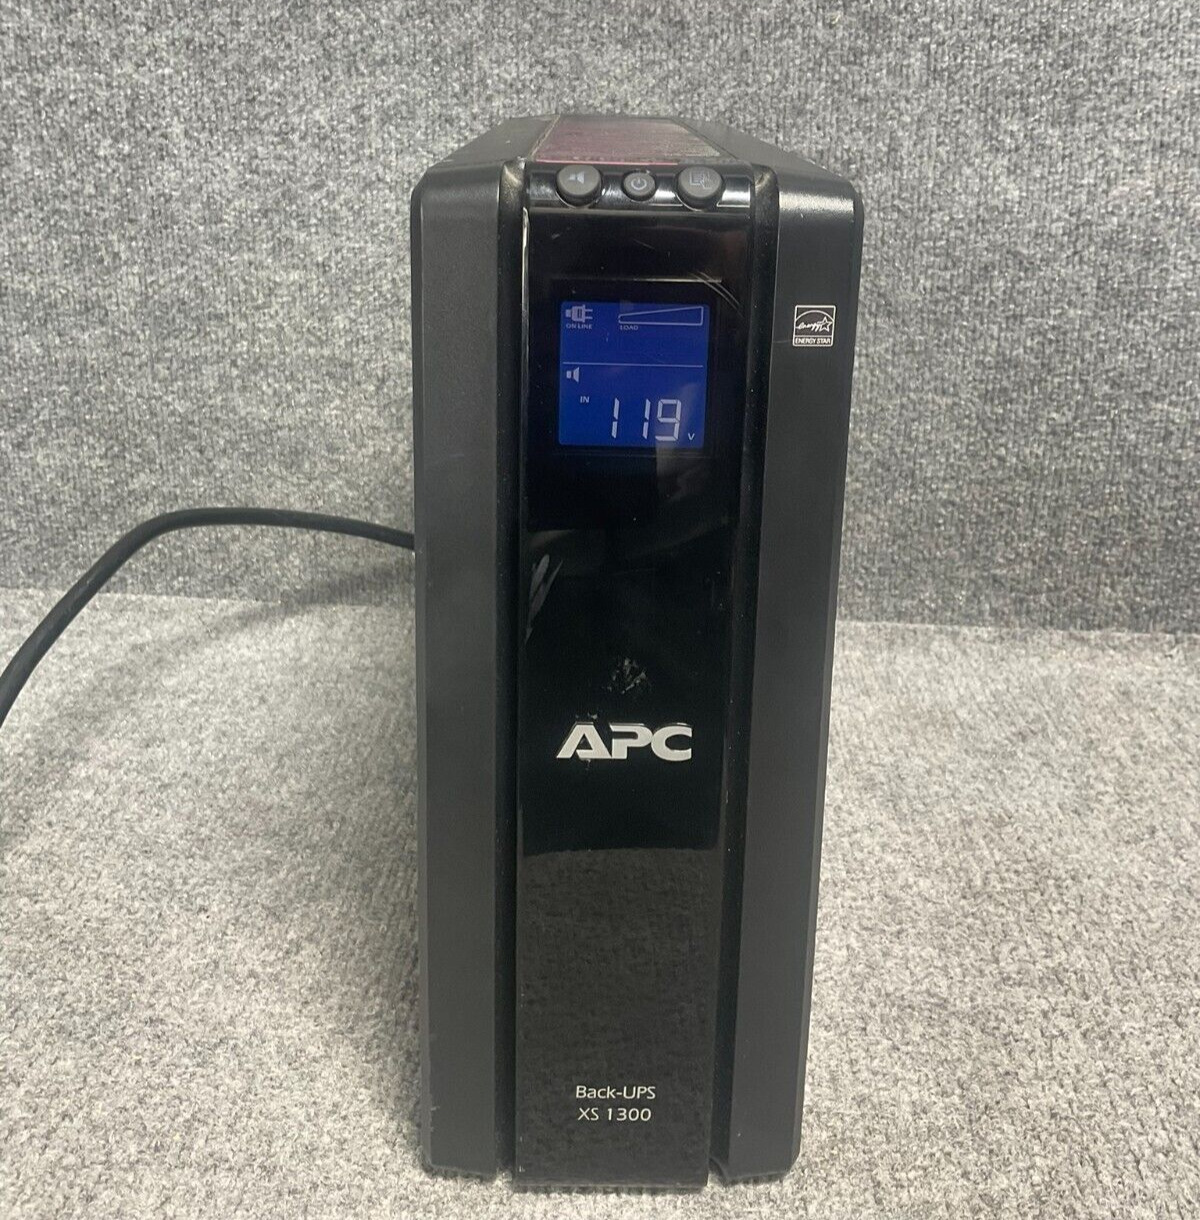 APC Battery Backup Back-UPS XS 1300, 10-Outlet, Tel/Ethernet, In Black Color